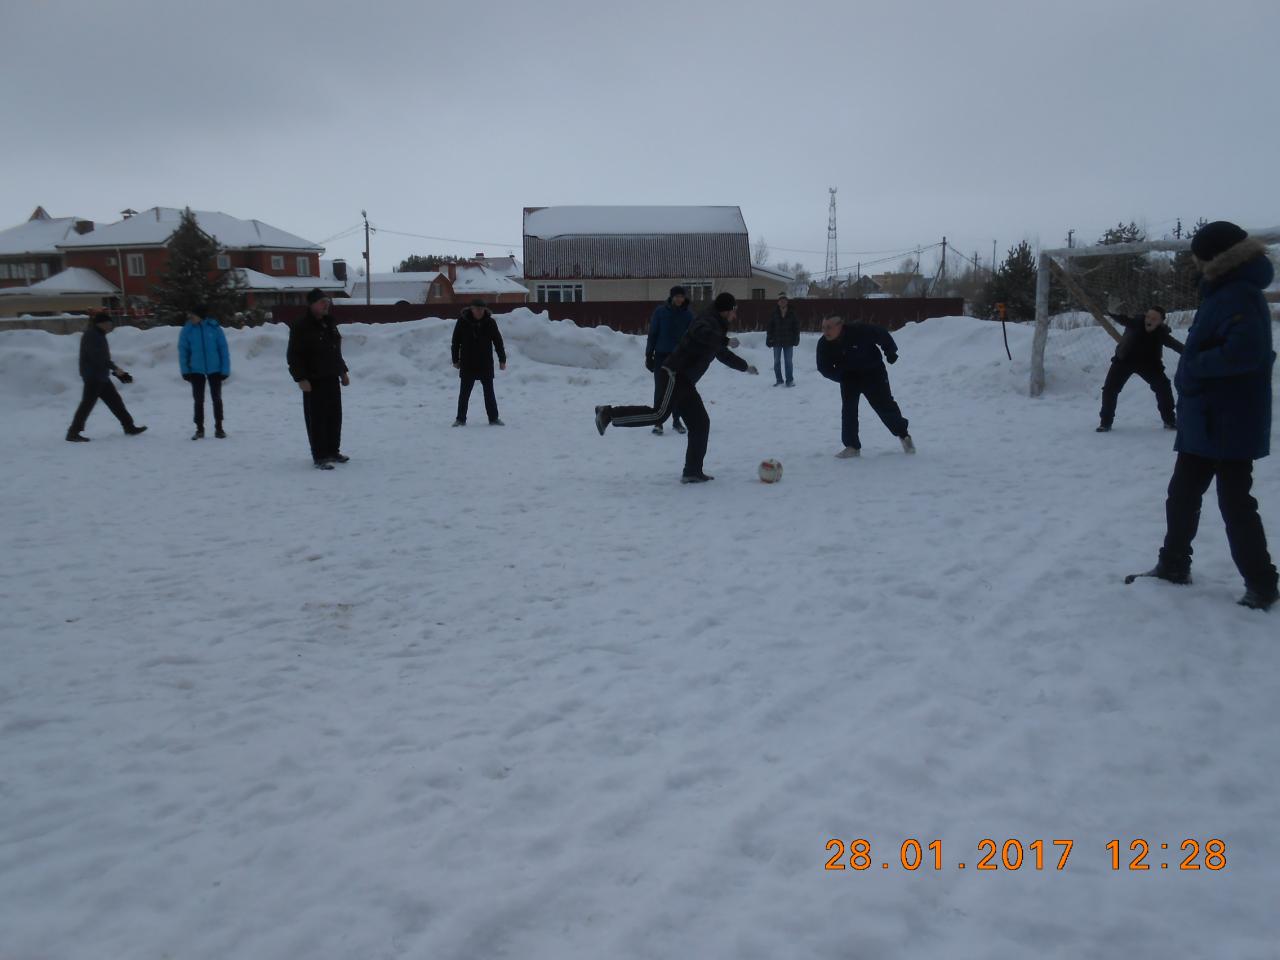 В Солотче состоялись соревнования по футболу на снегу 31.01.2017